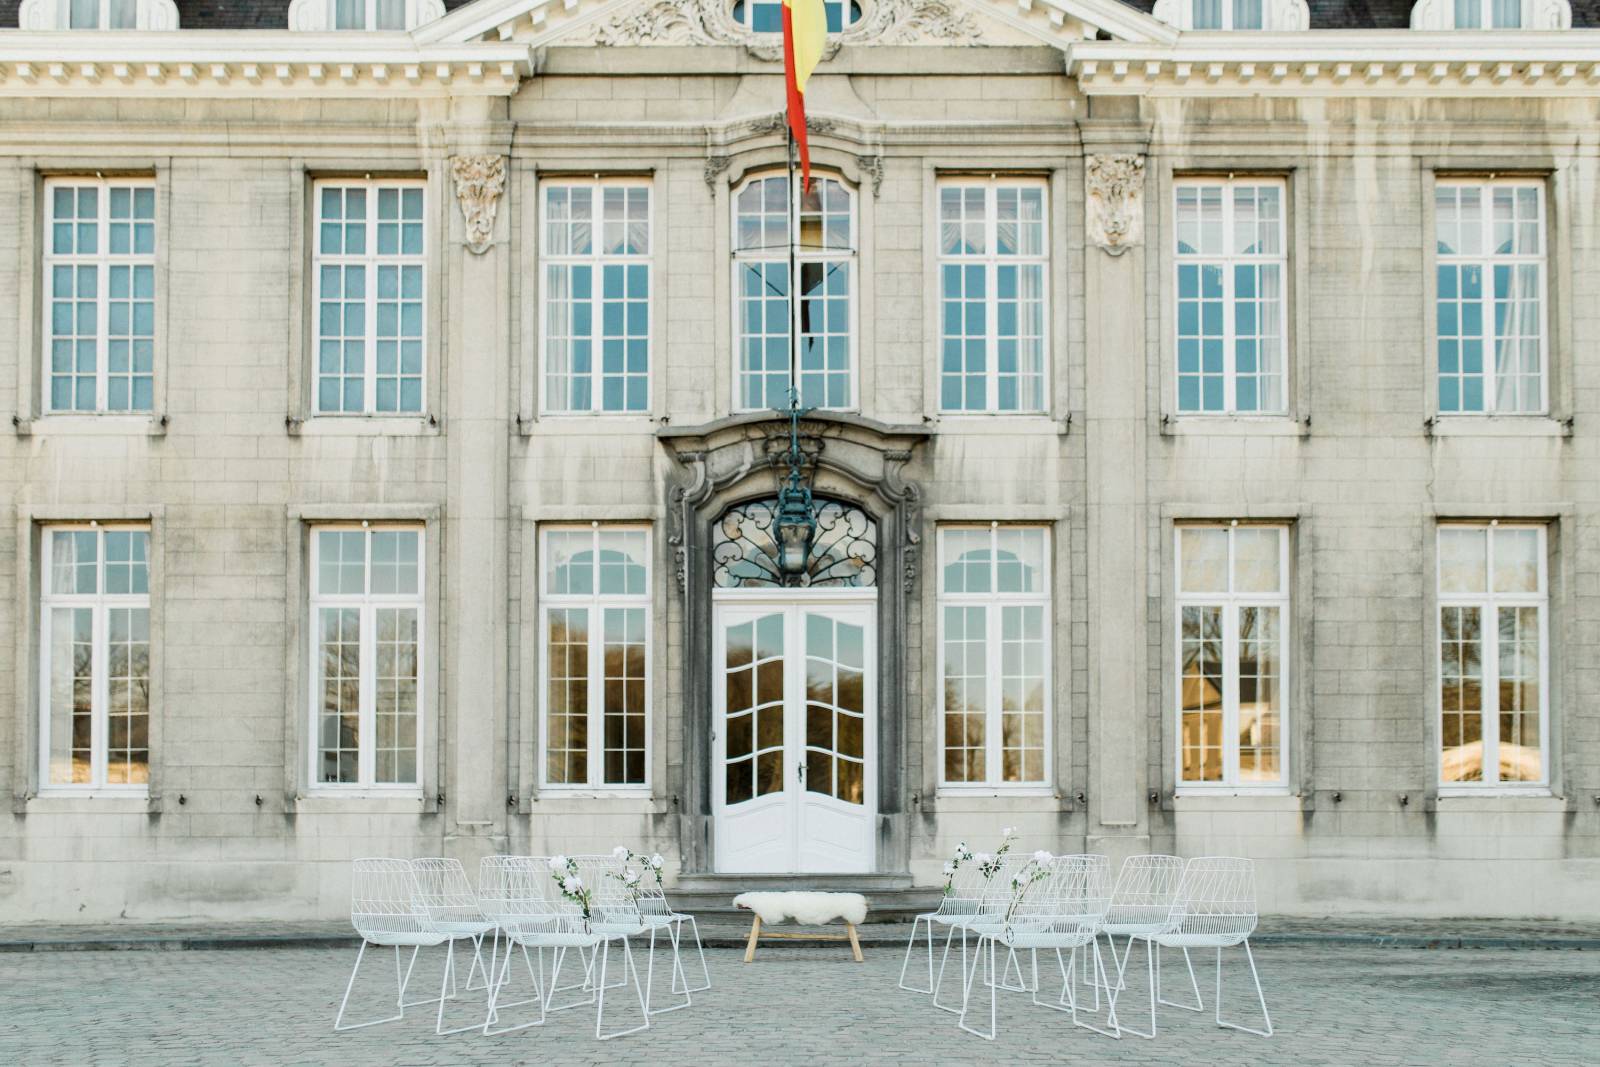 Decoratieverhuur - Fotograaf Elisabeth Van Lent - Trouwdecoratie - House of Weddings - 1